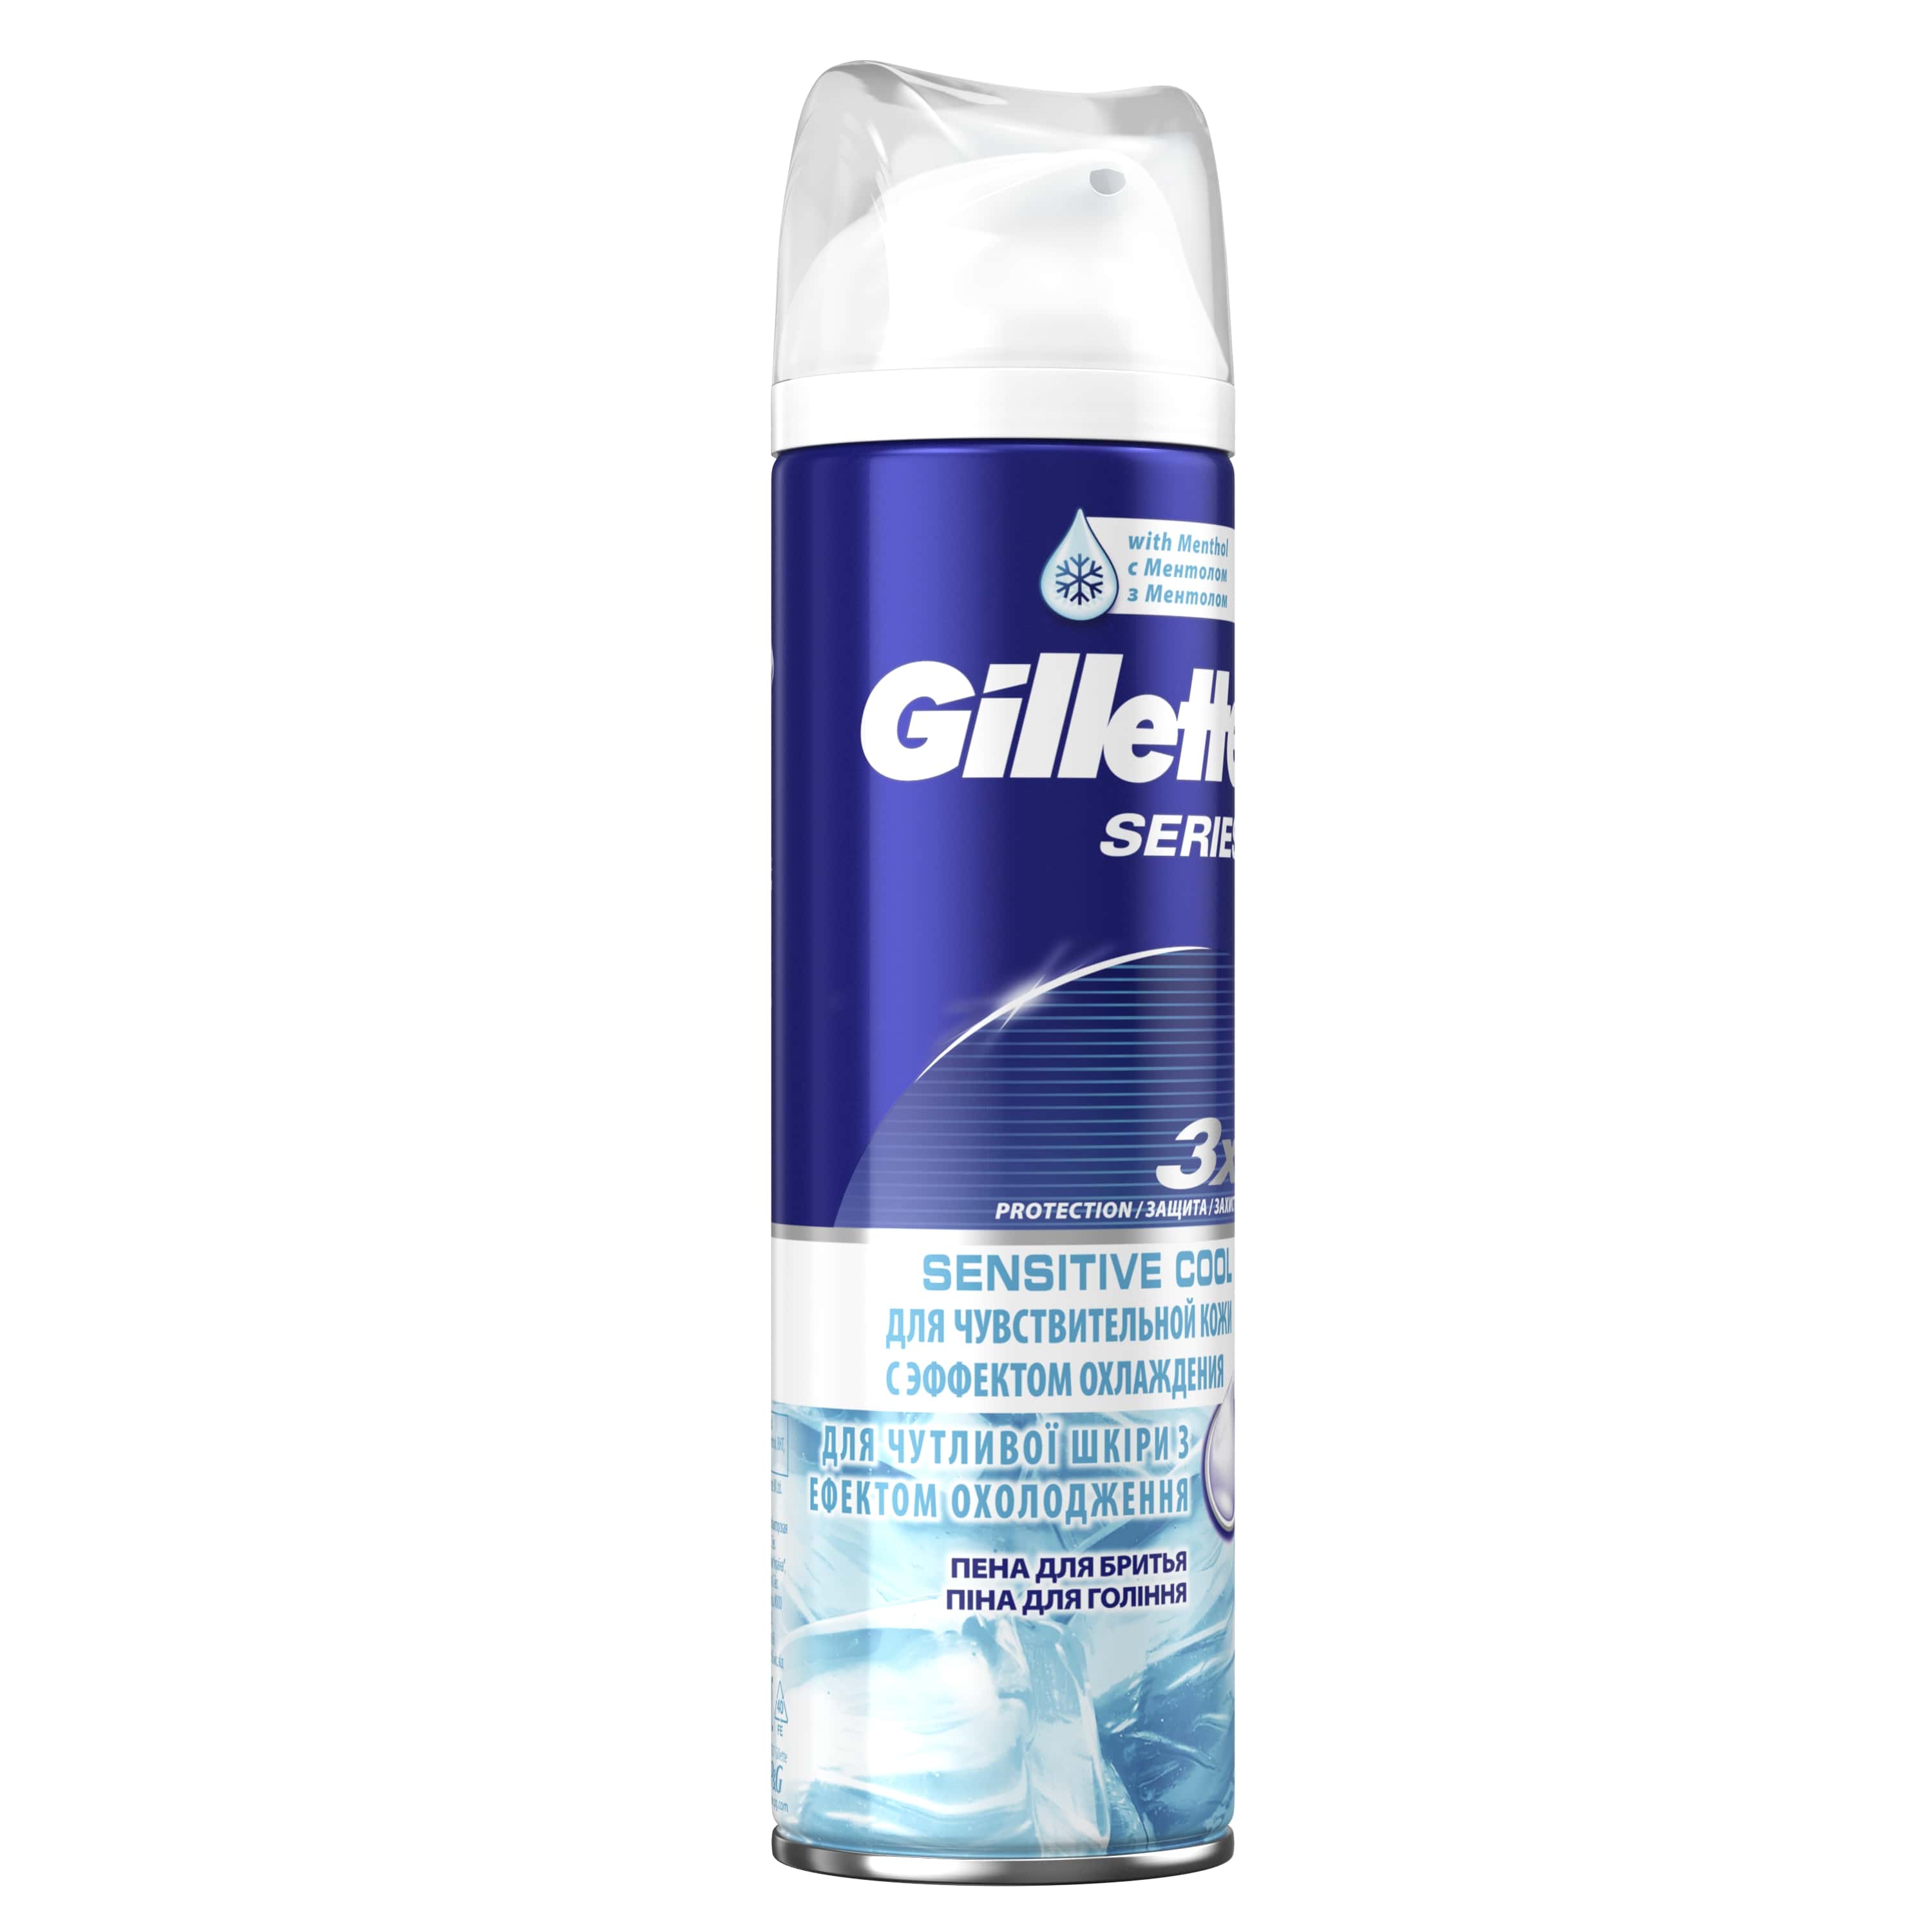 Піна для гоління Gillette Series Sensitive Cool, 250 мл - фото 2